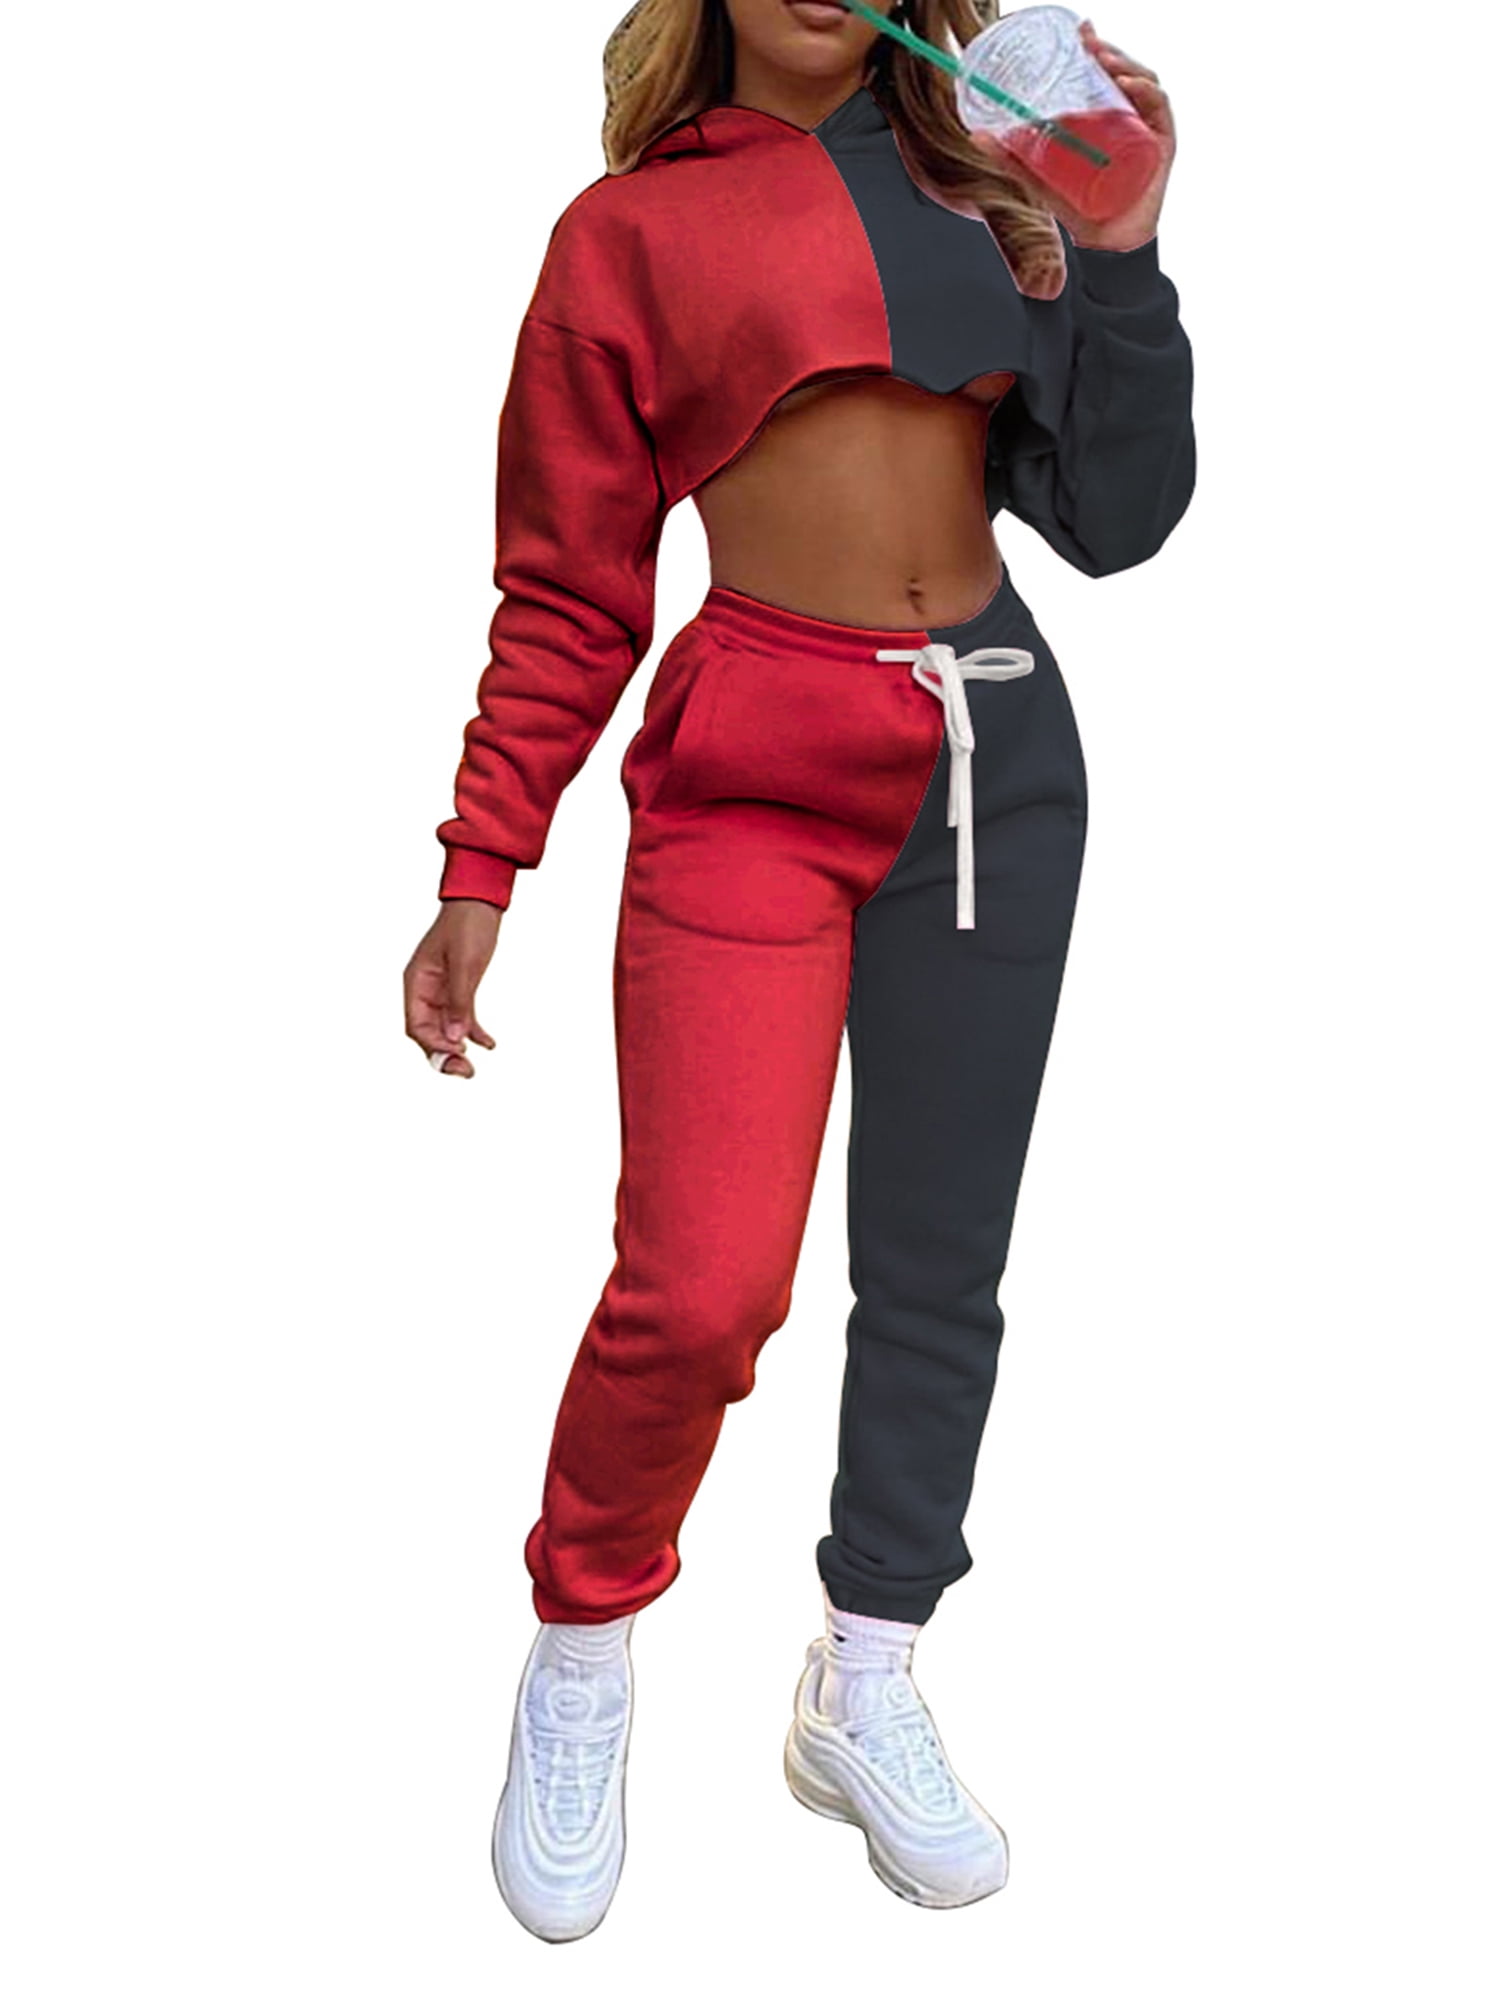 Sunmoot Stripe Sportswear for Women Casual Logo Hooded Long Sleeve Pullove Sport Tops+Long Joggers Pants Set 